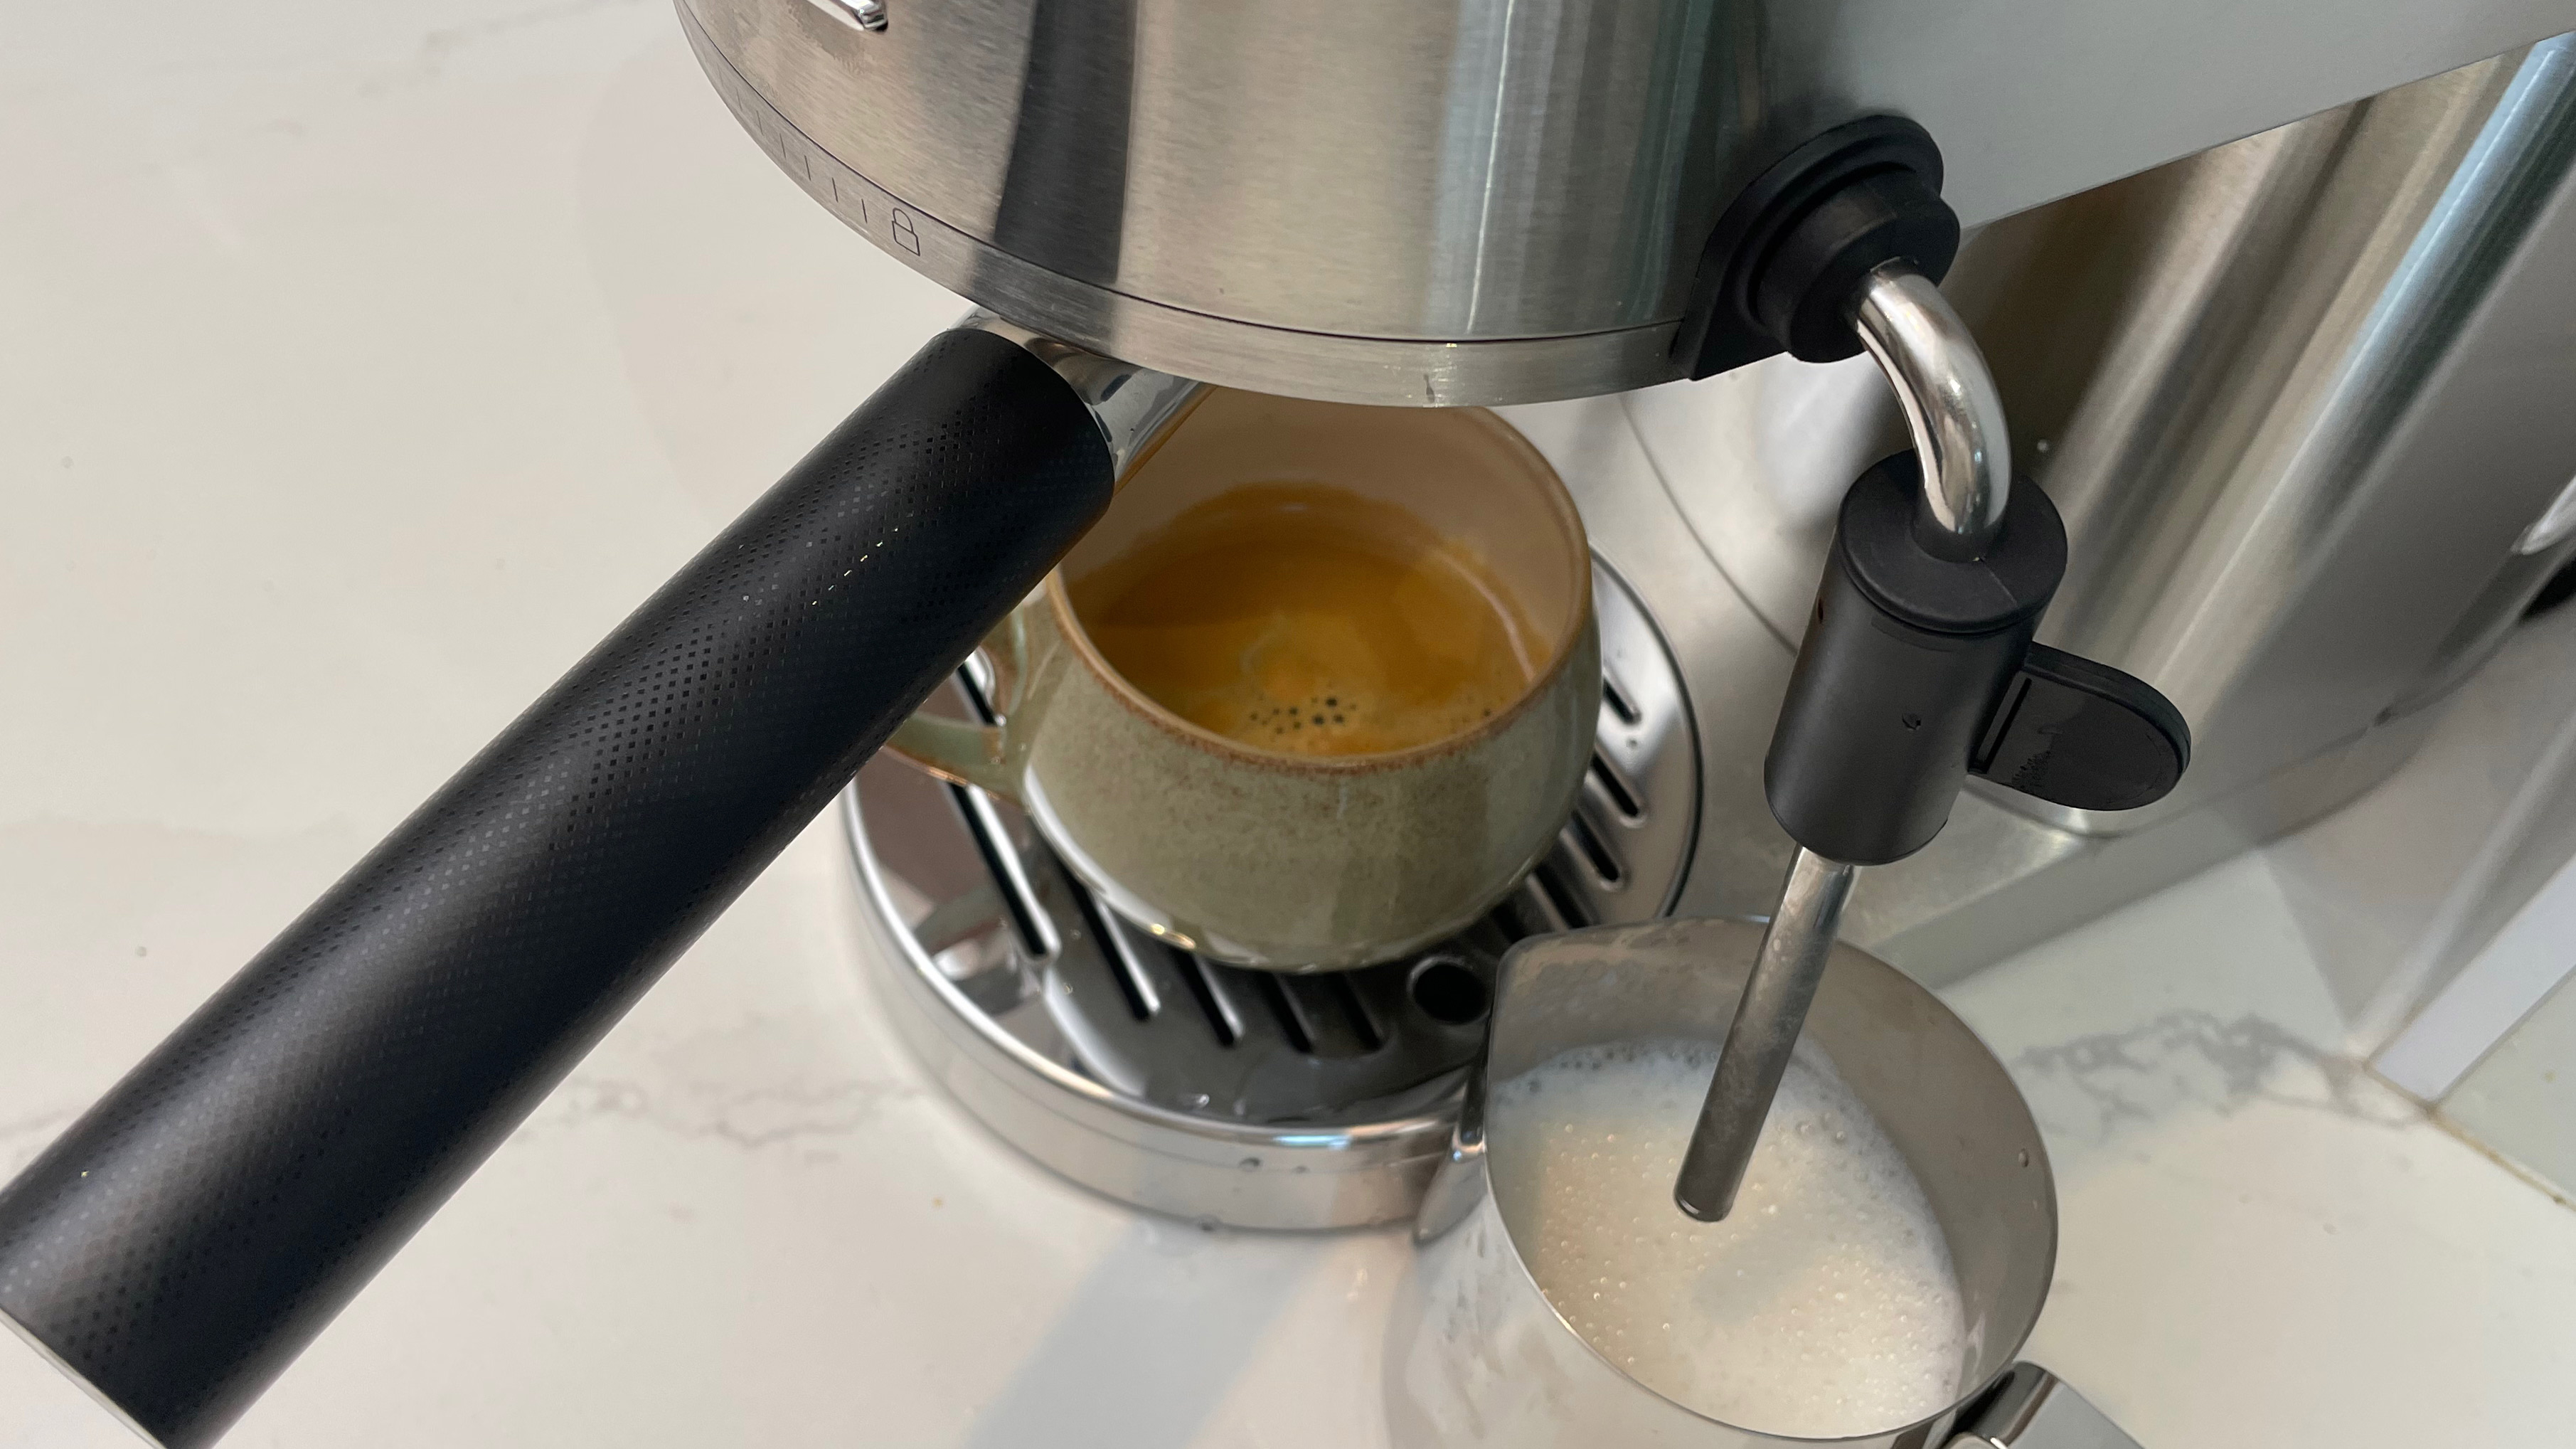 Mesin espresso KitchenAid Artisan KES6503 susu siap buih yang baru saja digunakan untuk menyeduh espresso